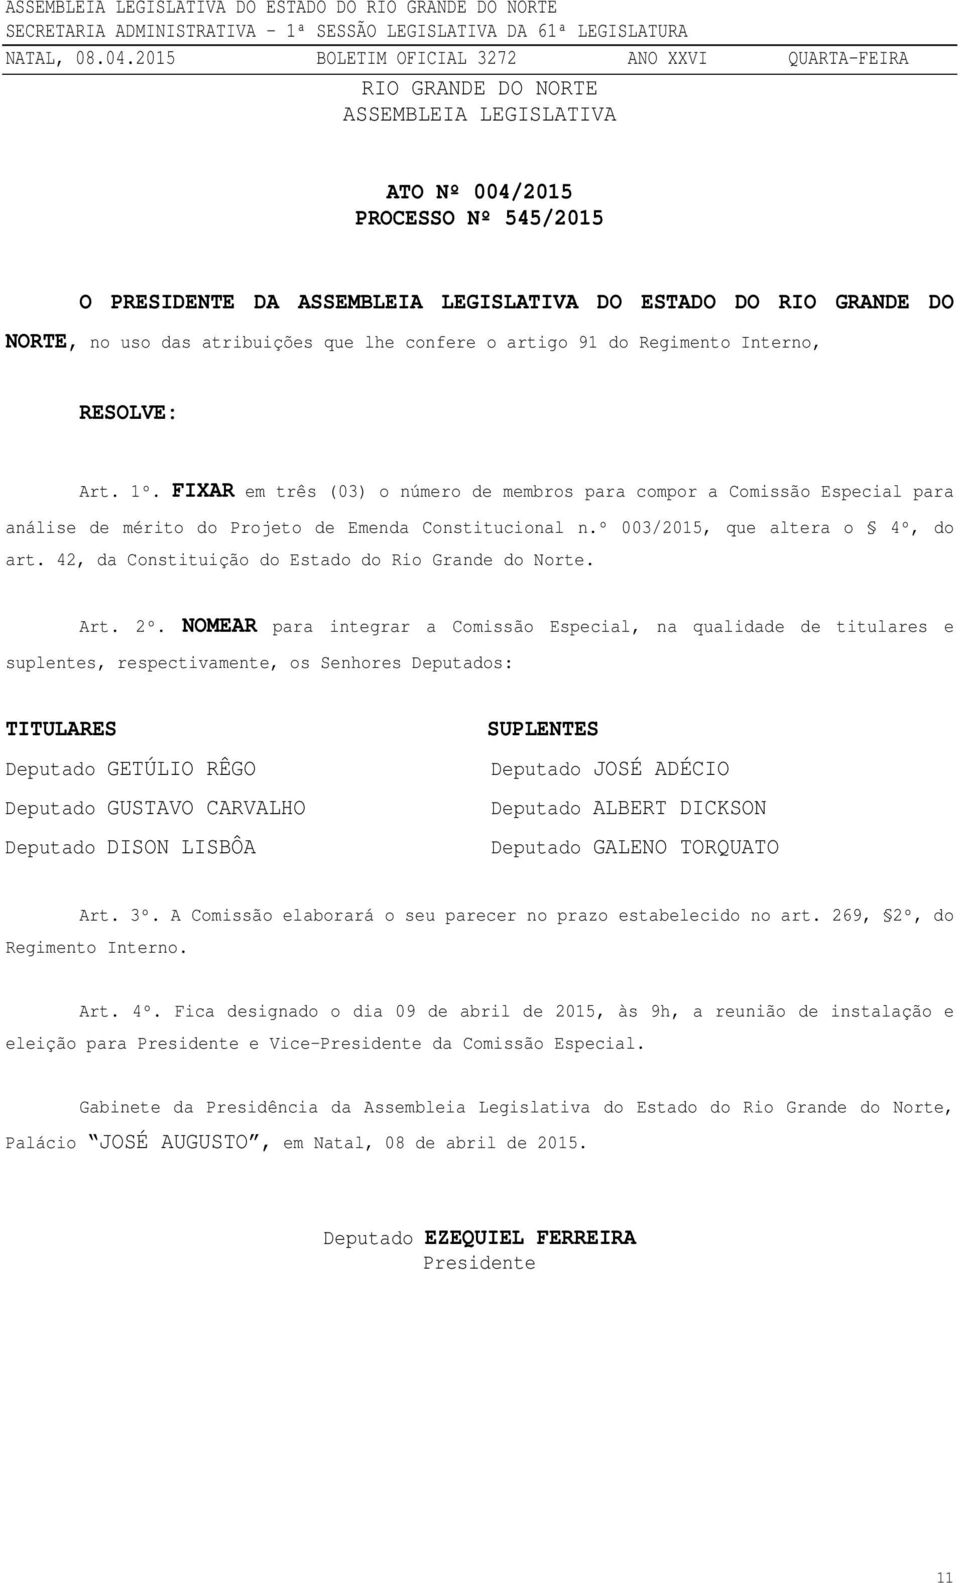 º 003/2015, que altera o 4º, do art. 42, da Constituição do Estado do Rio Grande do Norte. Art. 2º.